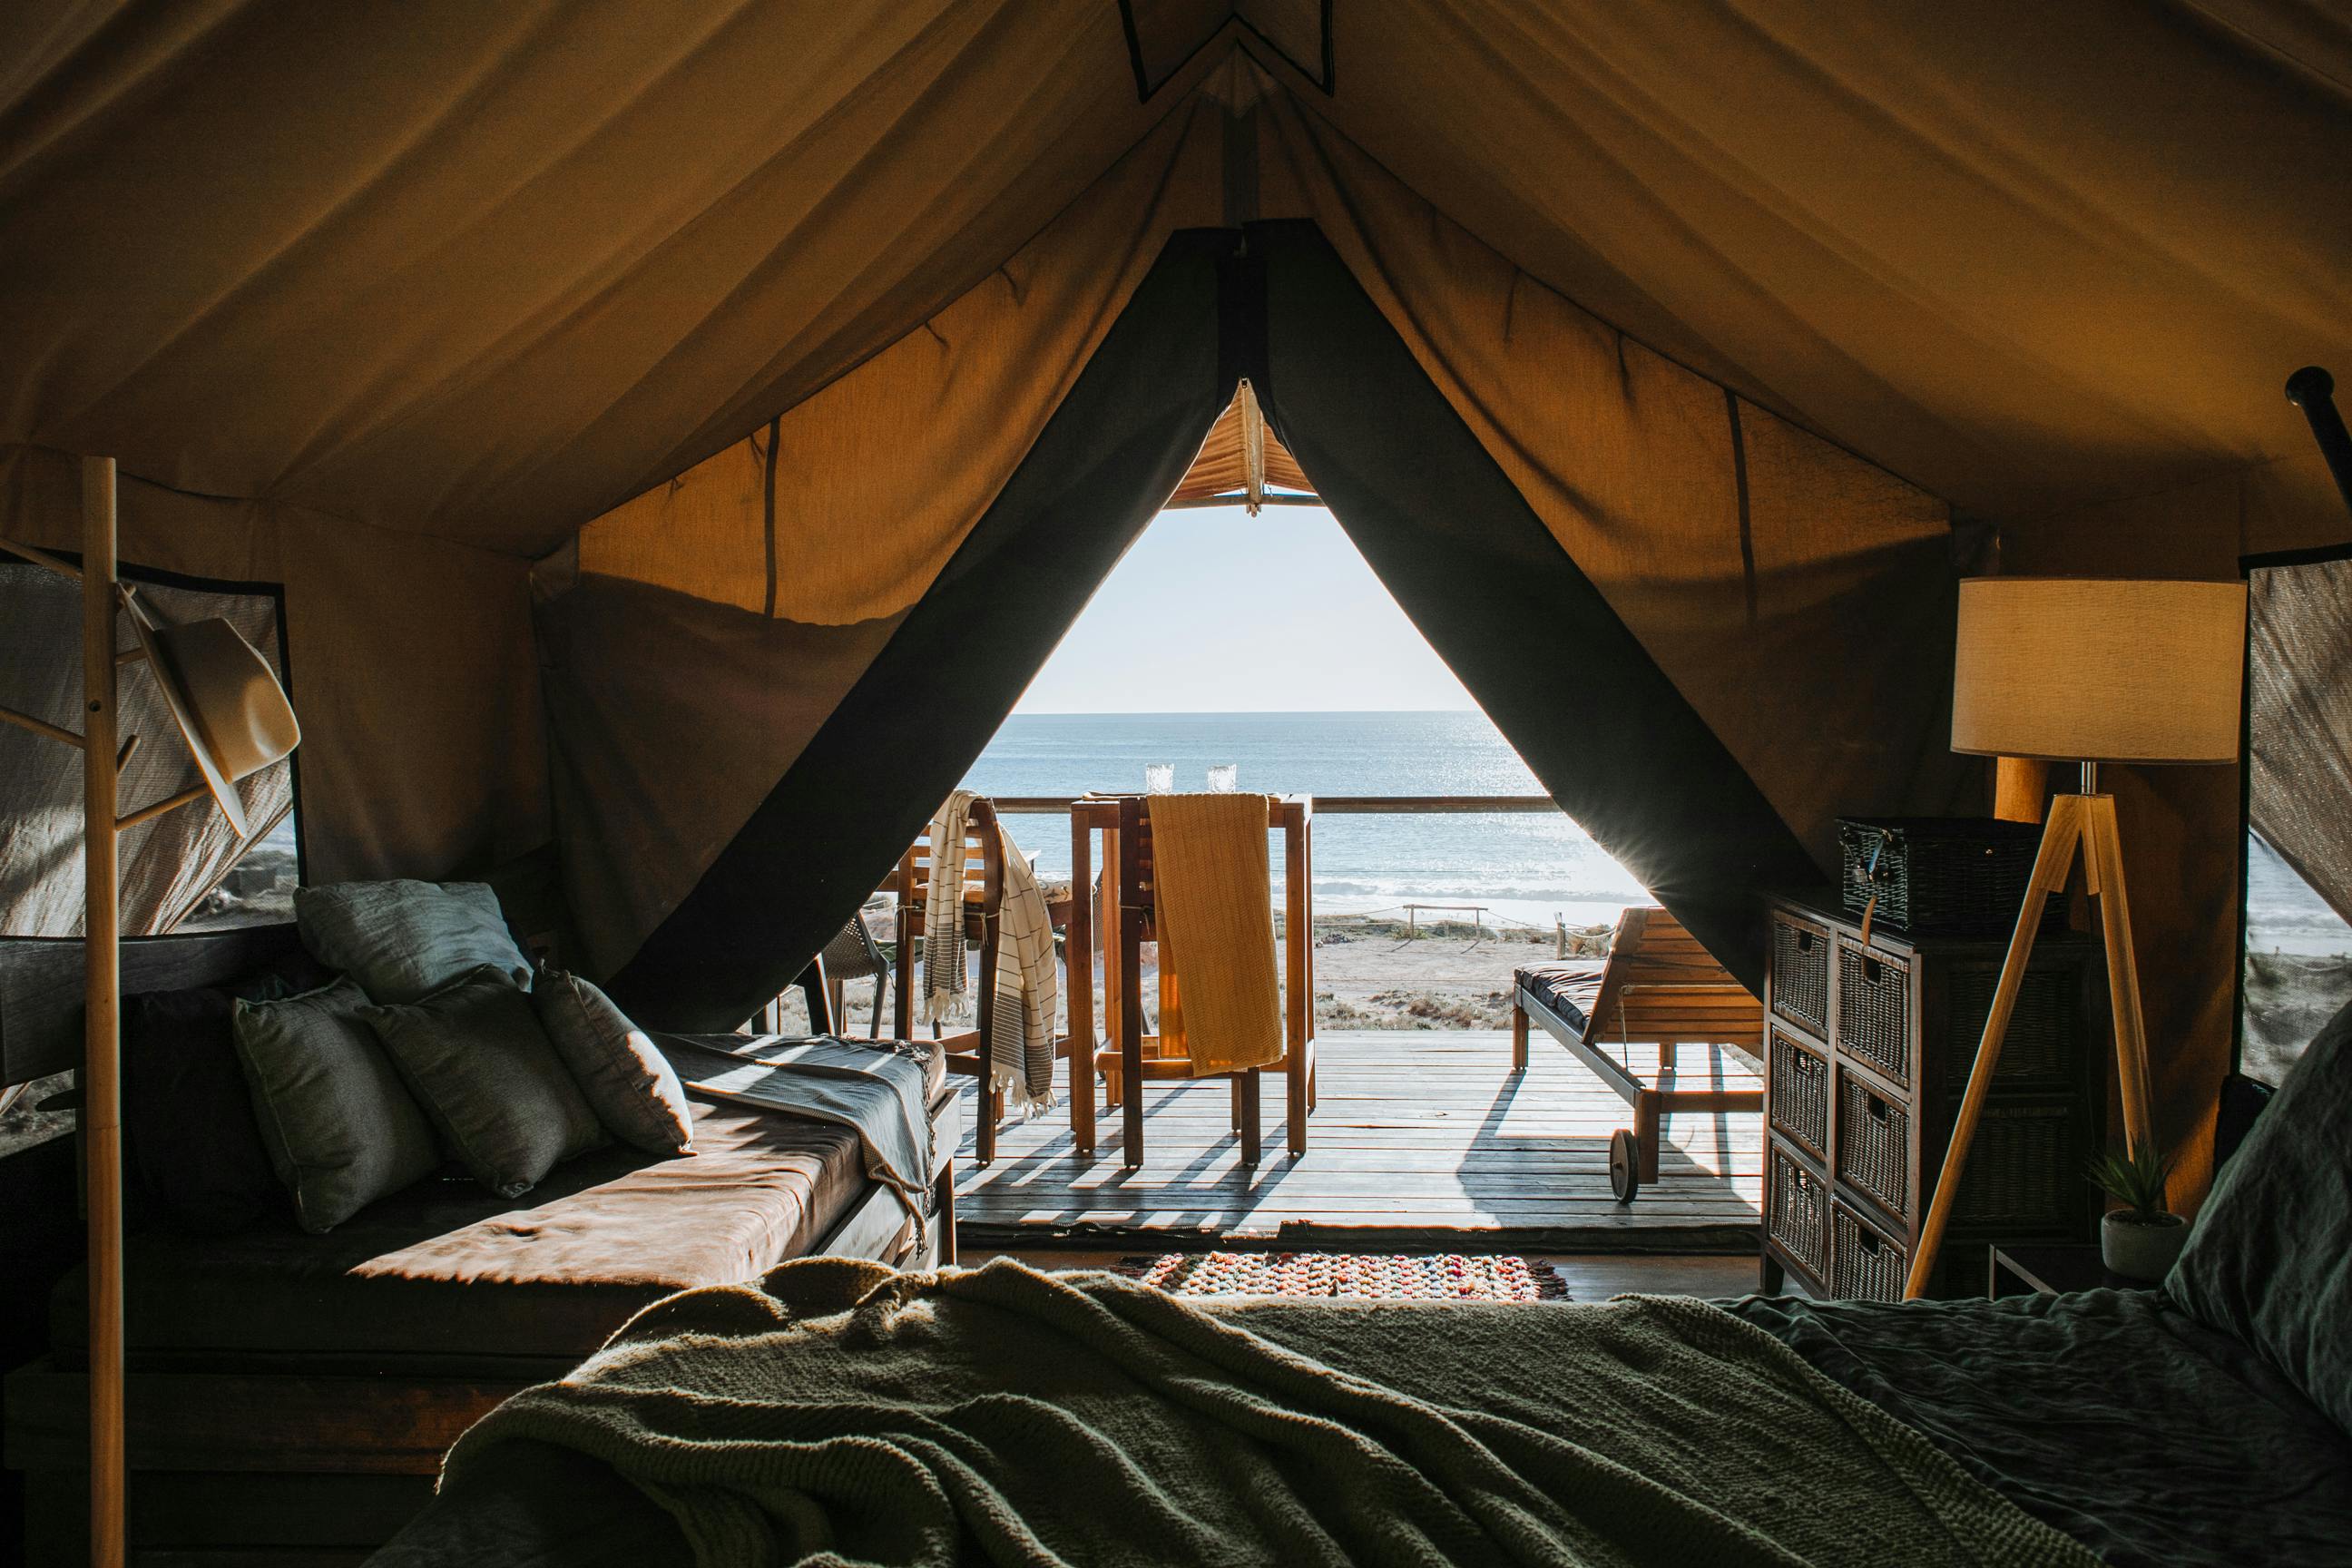 Una habitación de hotel en una tienda de campaña cerca del océano | Fuente: Pexels